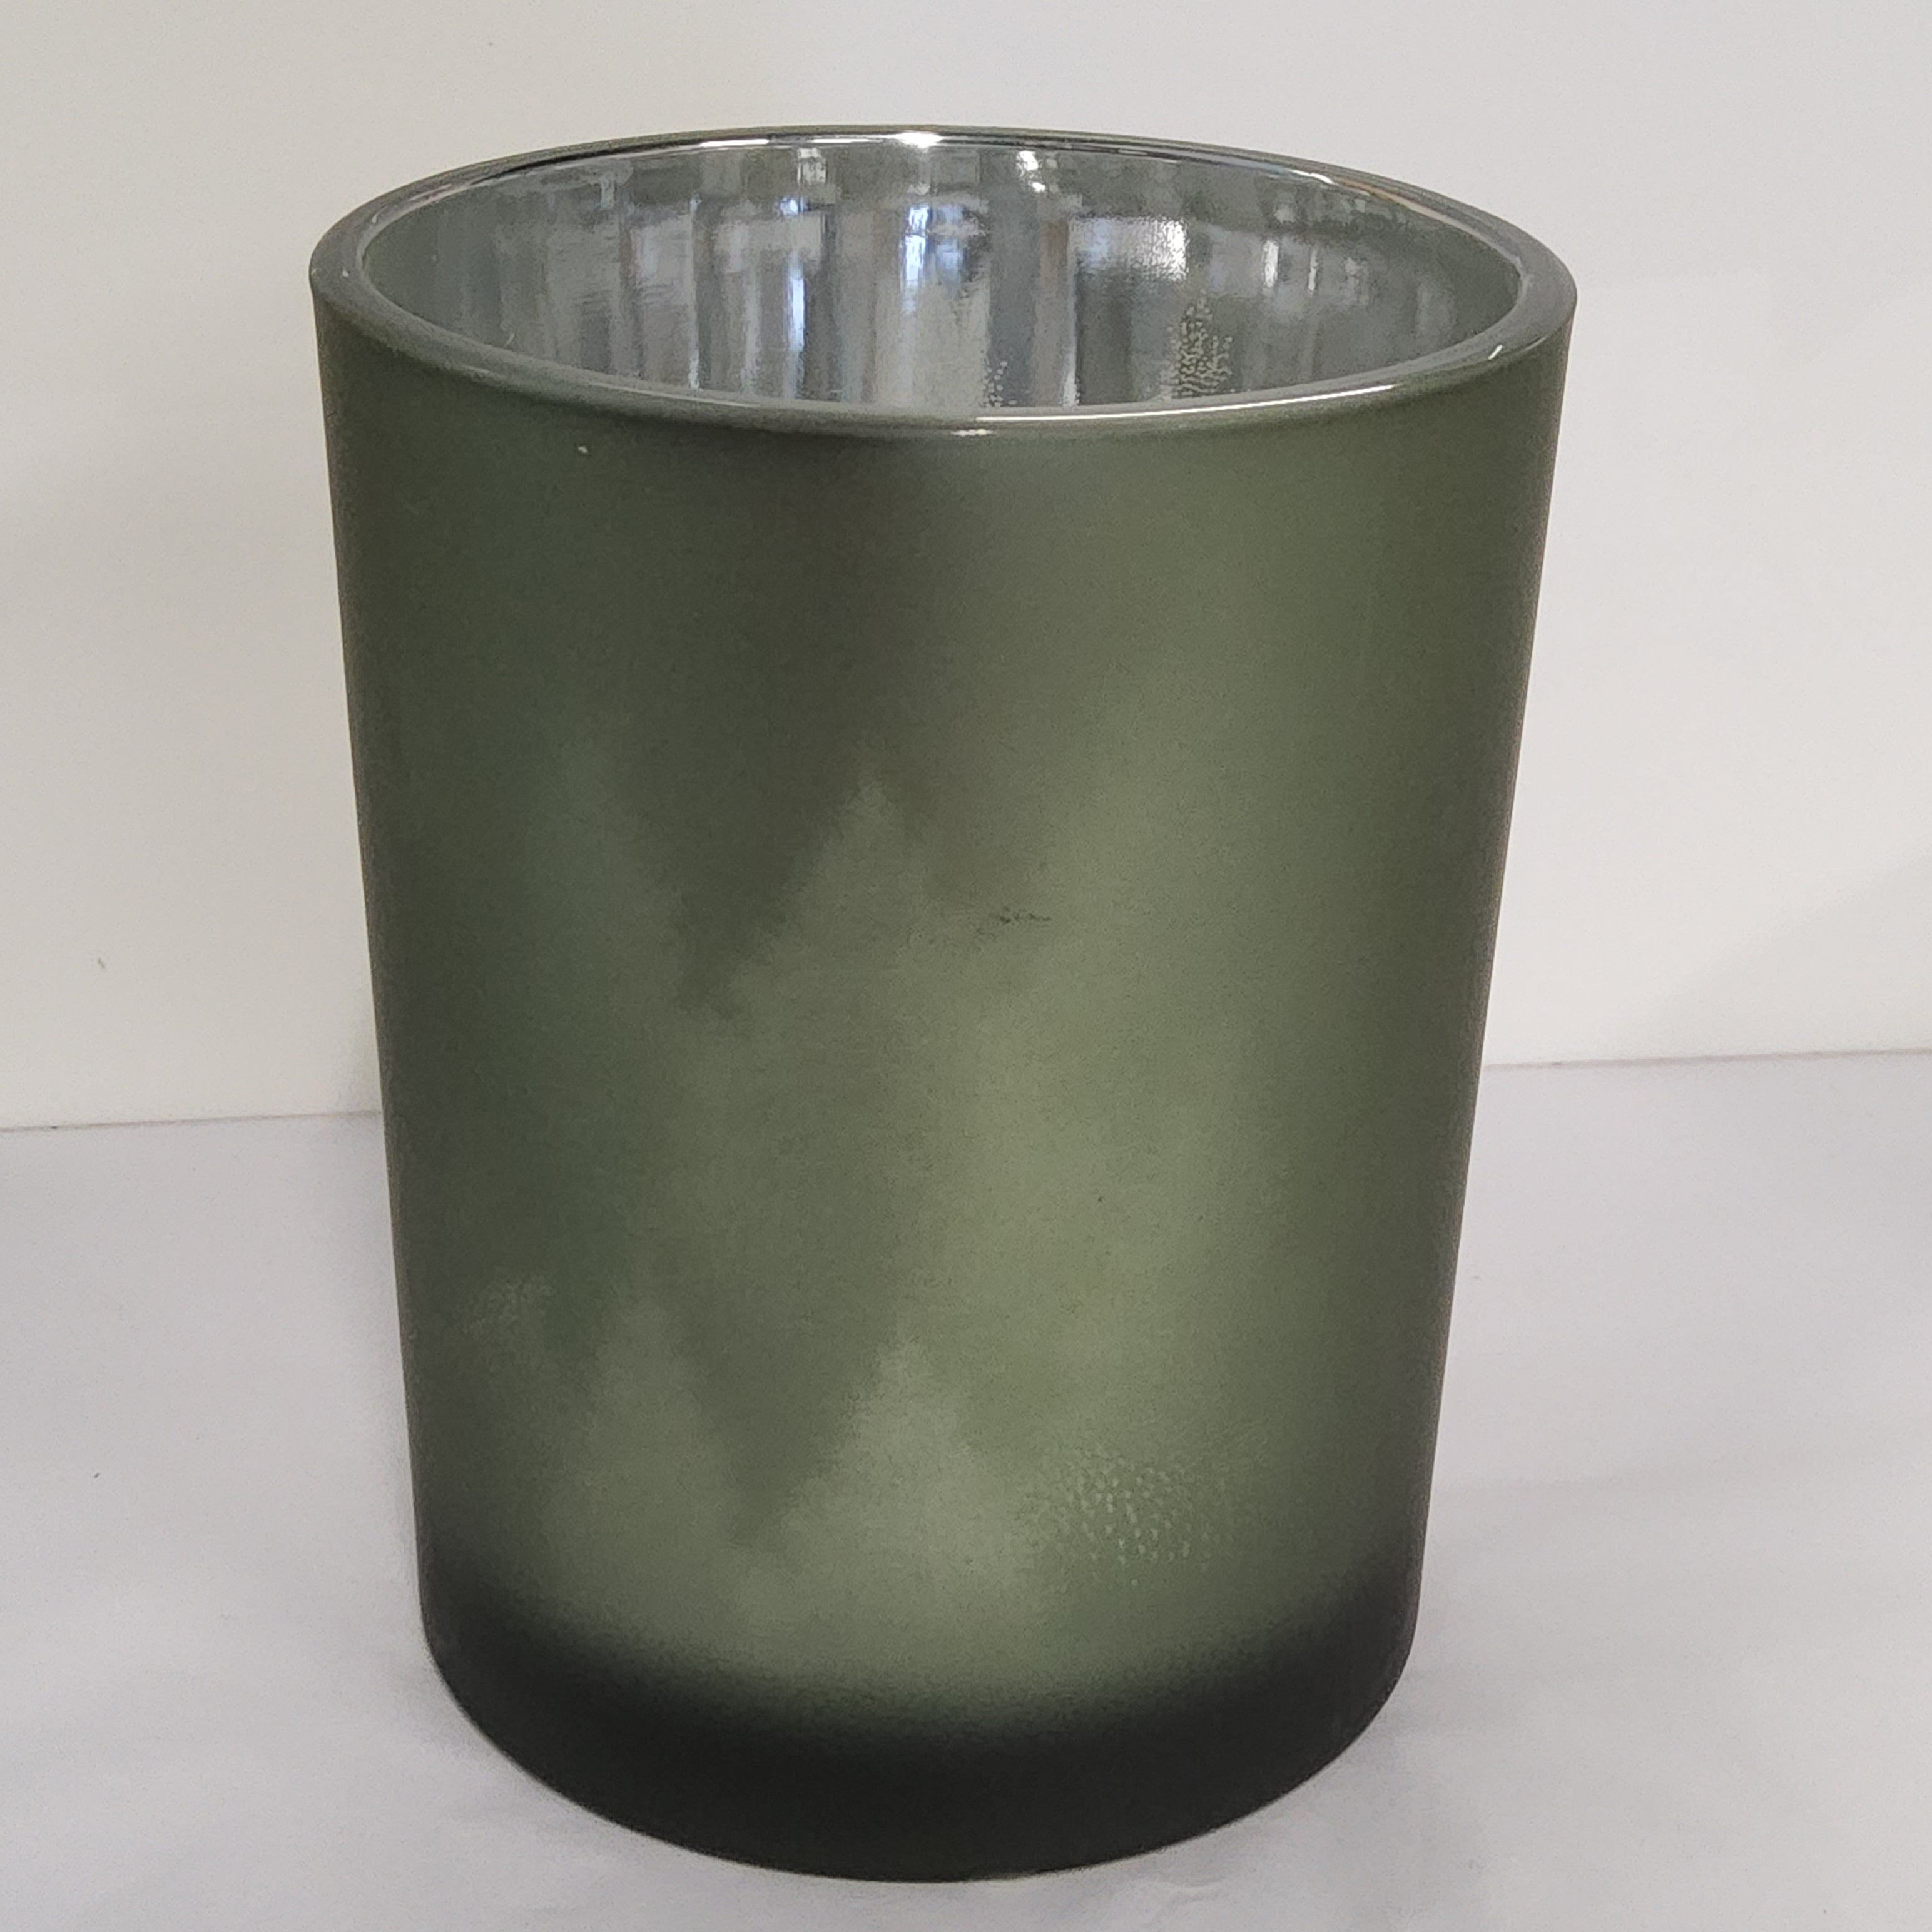 Glass Hurricane Vase - Evergreen Forest - 4x5"